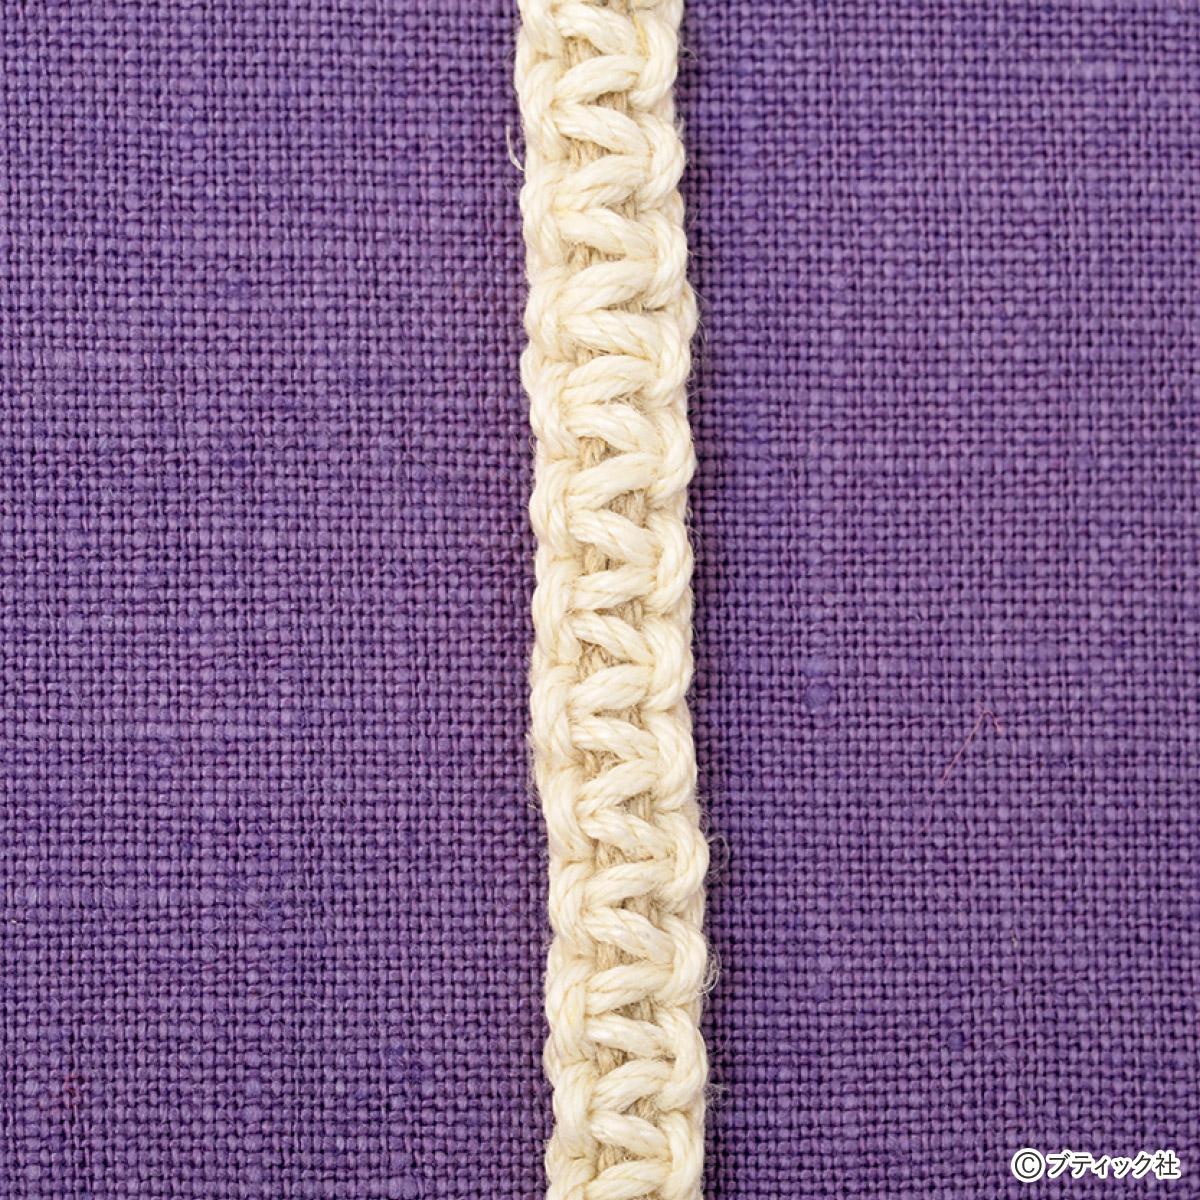 平結び 平編み の結び方 紐結び方 飾り結び ぬくもり